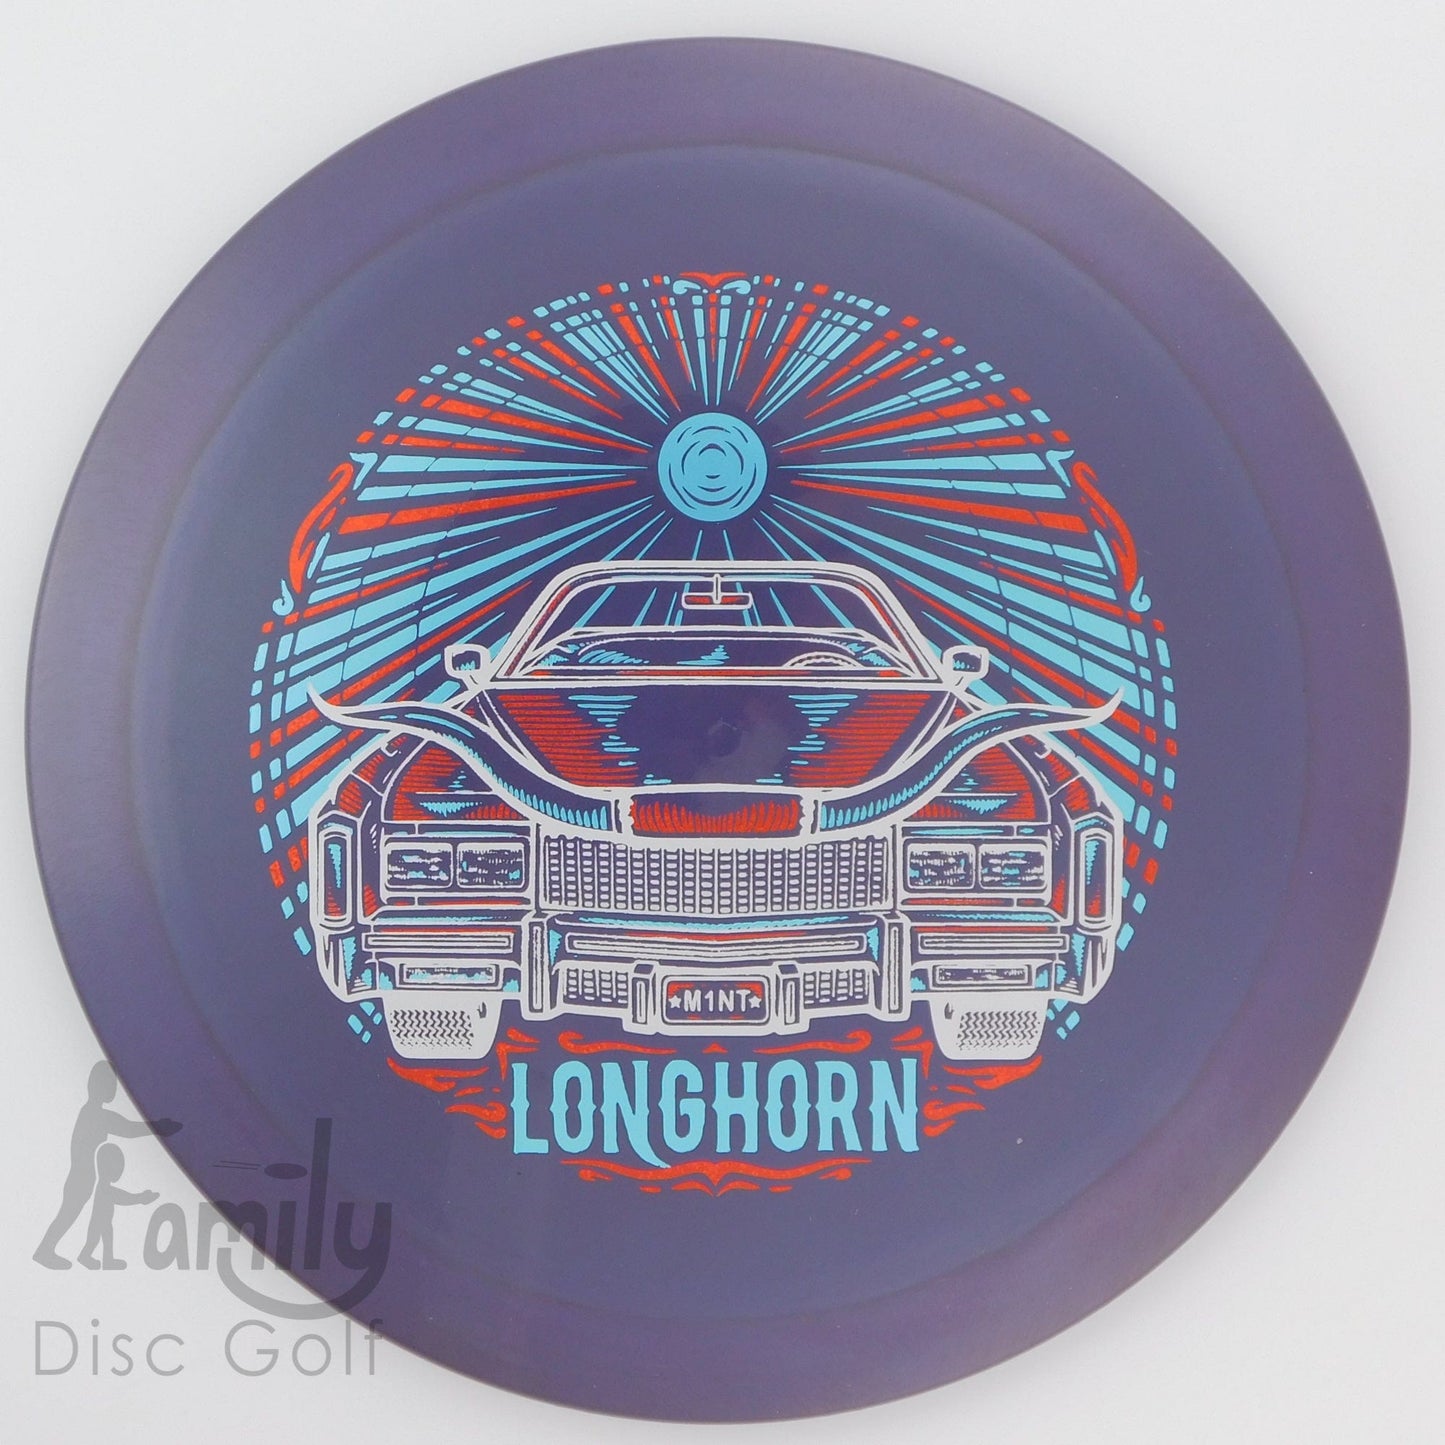 Mint Discs Longhorn - Sublime 11│4│-1│2.5 176.3g - Purple - Mint Discs Longhorn - Sublime - 101359